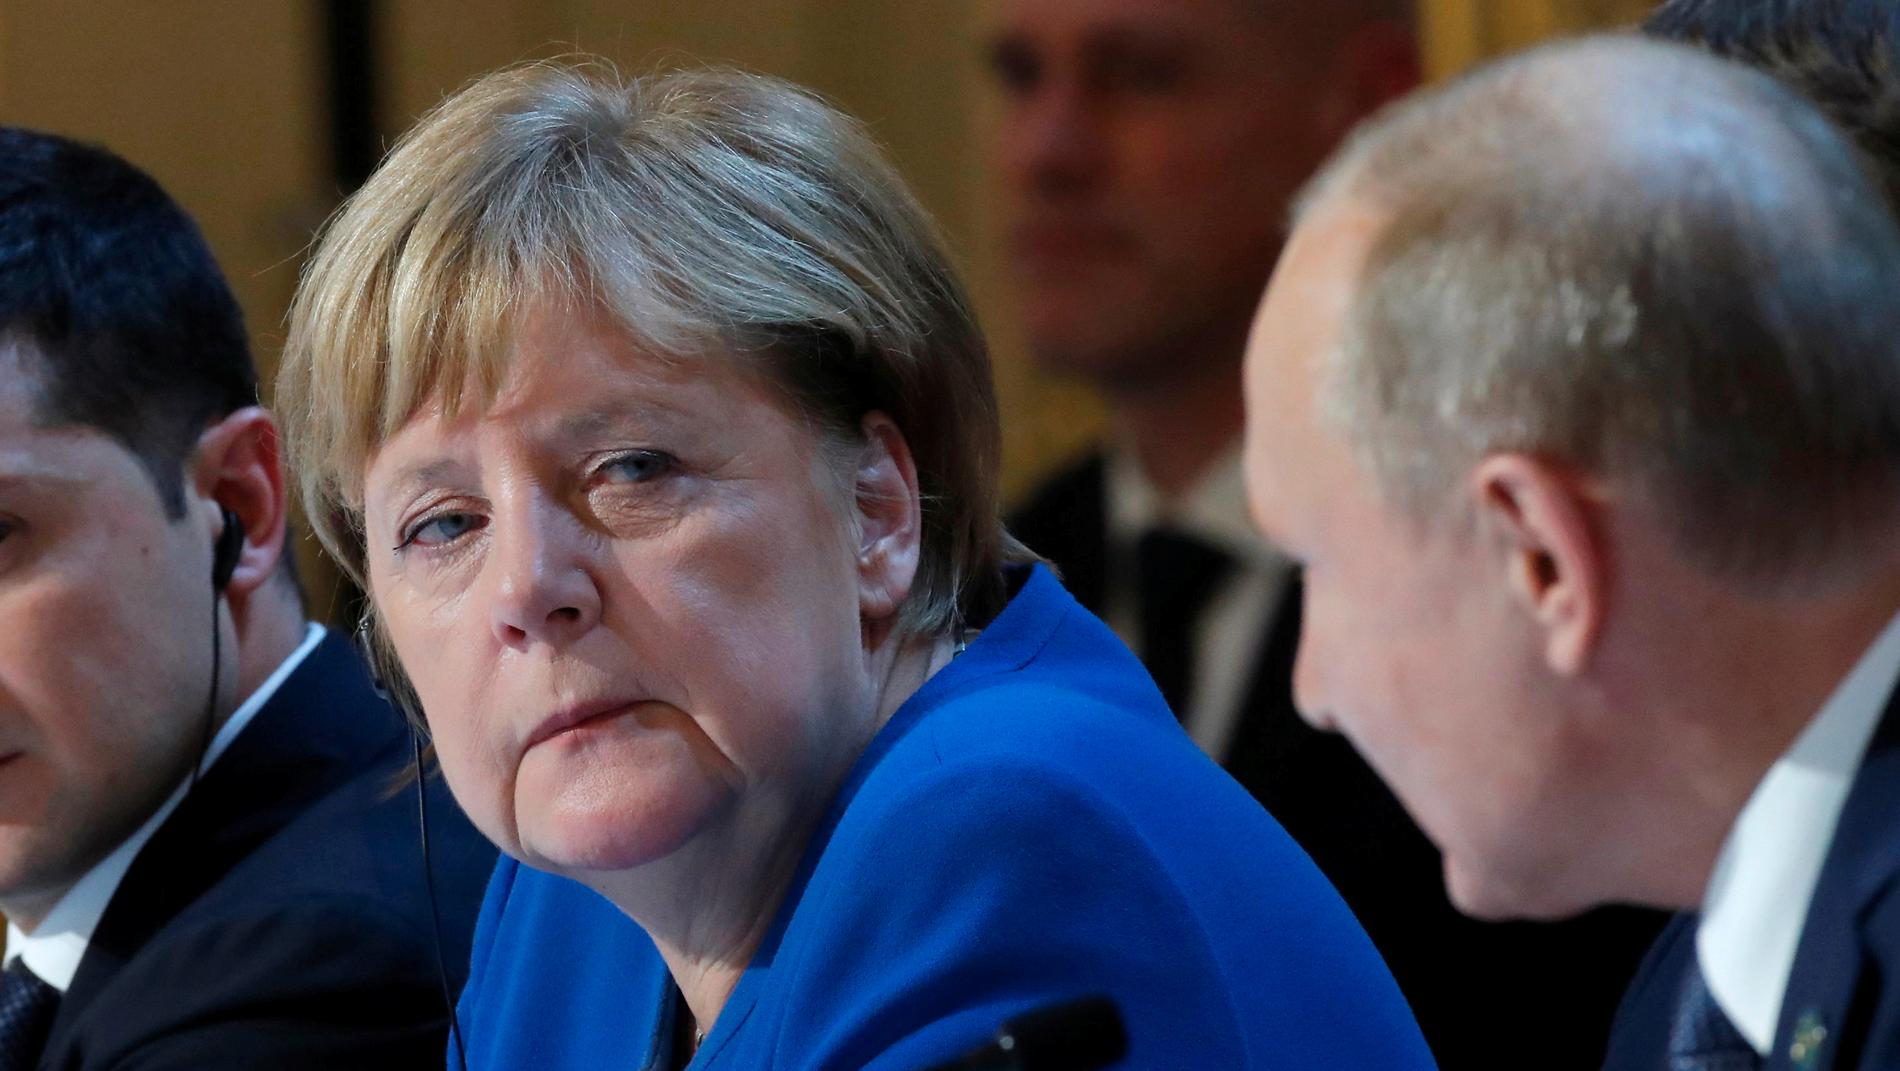 Tyskland ifrågasätter ryska uppgifter om offret för ett uppmärksammat mord i Berlin. Tysklands förbundskansler Angela Merkel träffade Rysslands president Vladimir Putin (till höger) tidigare i veckan.